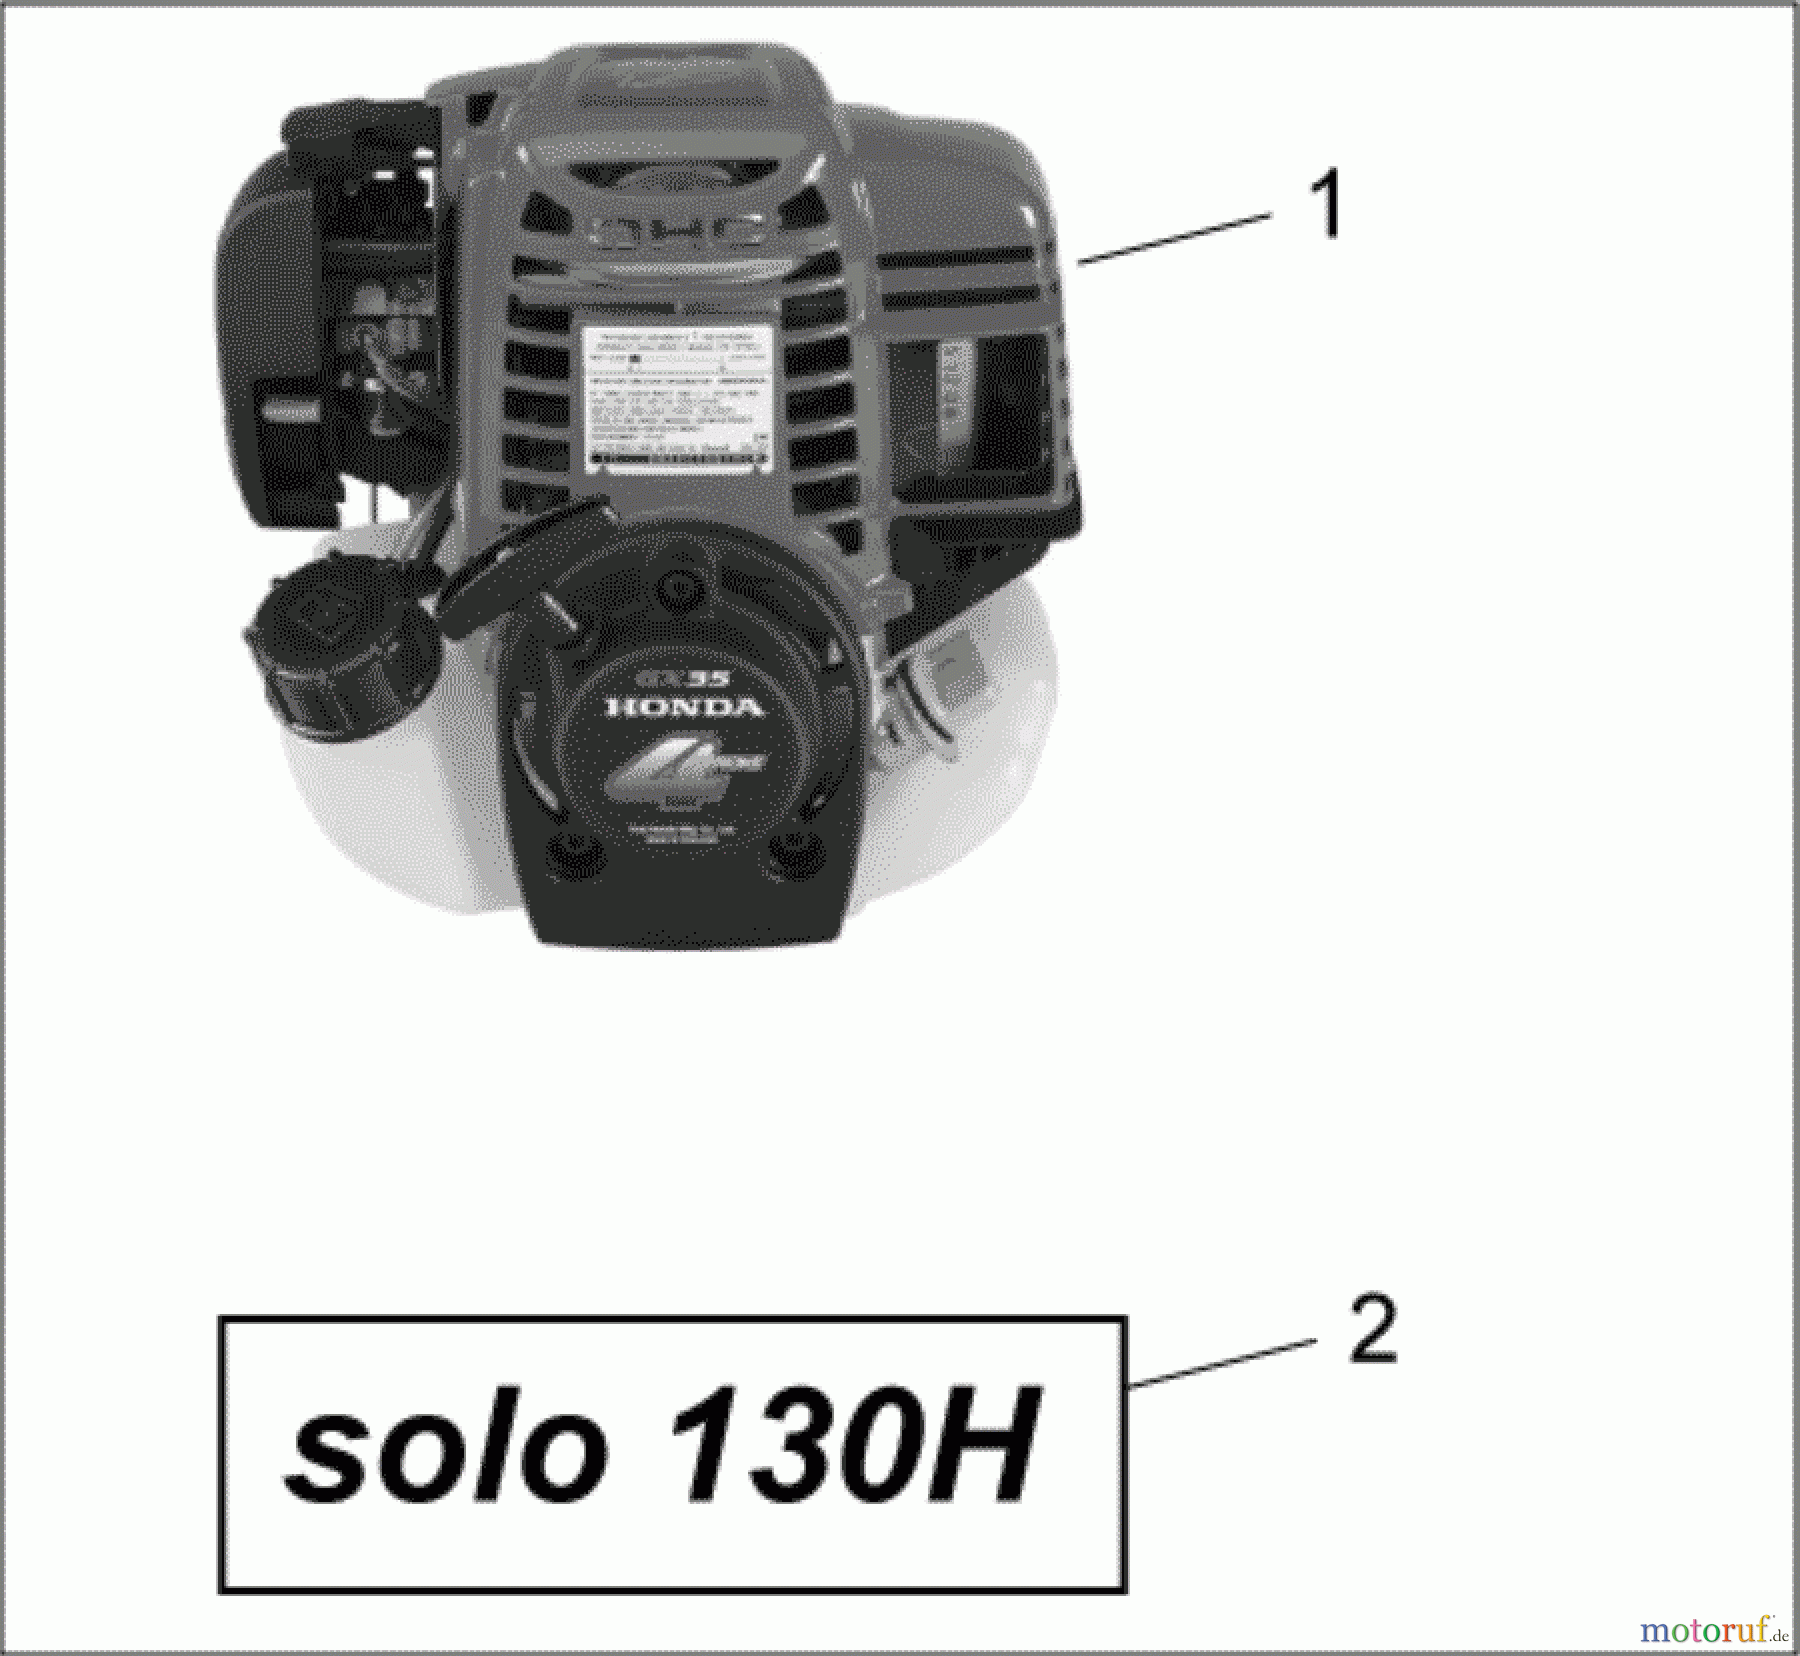  Solo by AL-KO Gartentechnik Motorsensen 130 H S.Nr. 7938 ->;  52007 Druck 9 130 702 ab 05/2007 [SN: S.Nr. 7938 ->;  52007 Druck 9 130 702] Seite 1